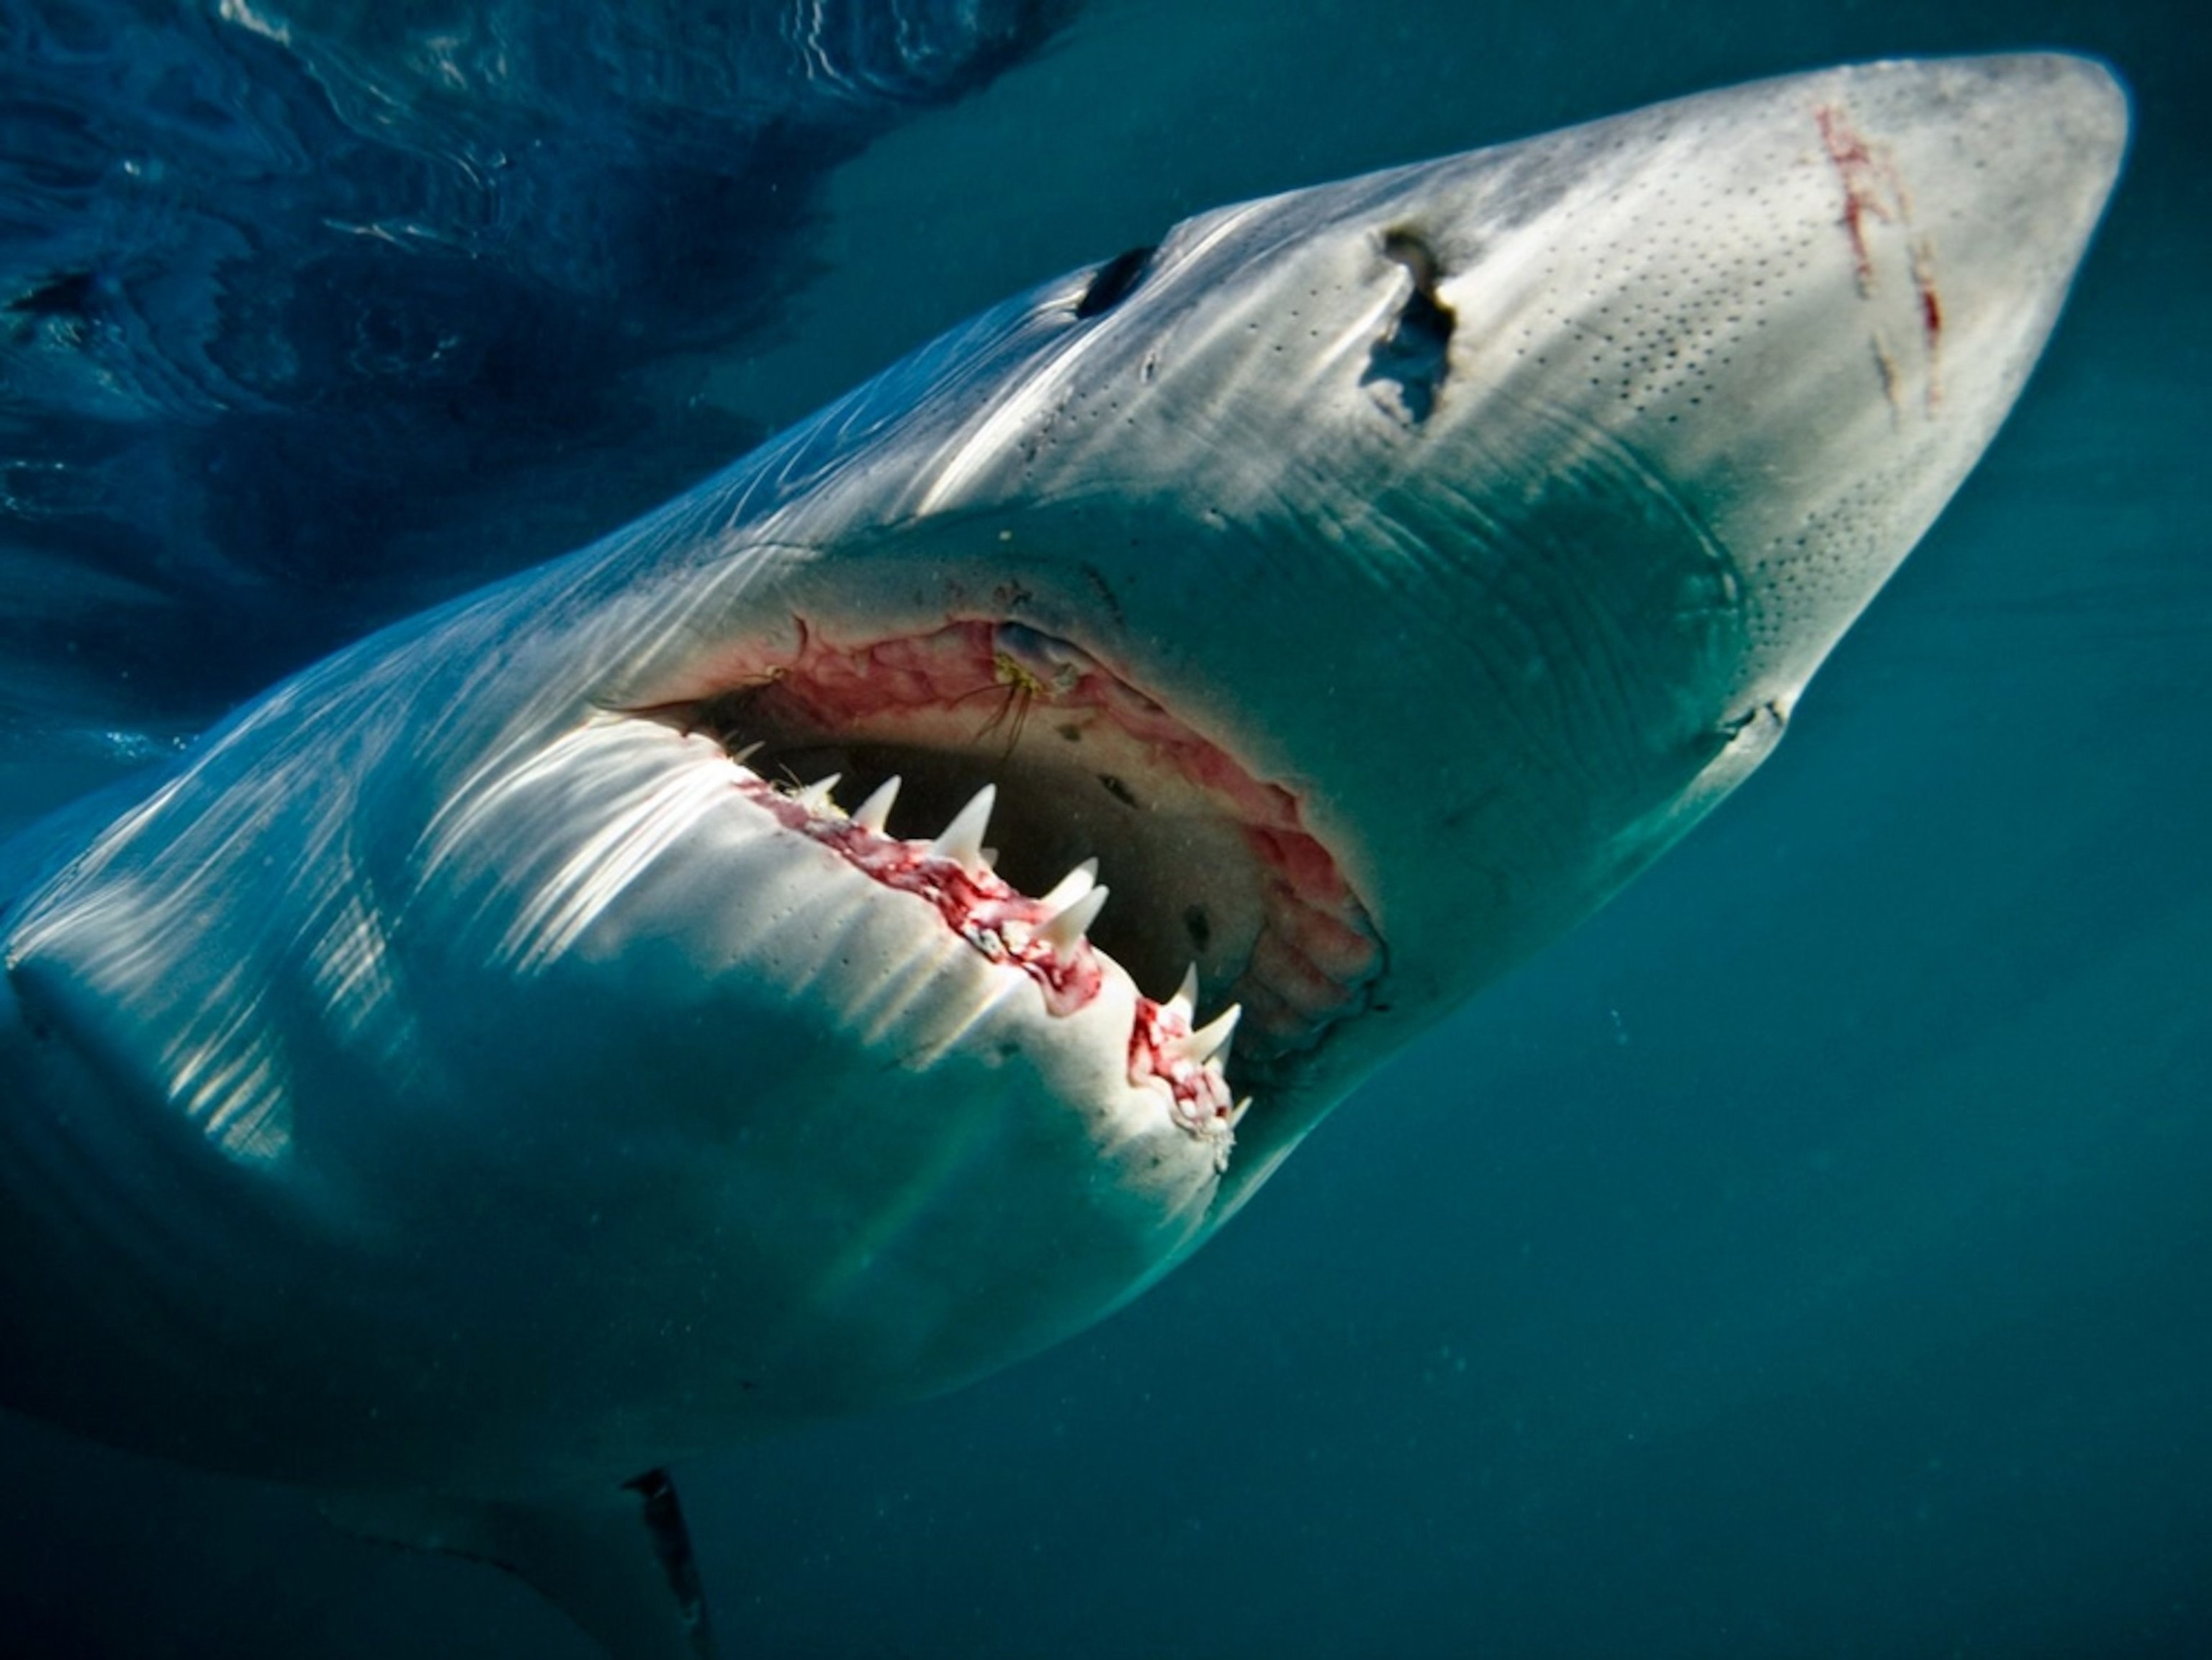 Scary shark. Чернорылая акула. Большая белая акула National Geographic. Большая белая акула 6 метров.